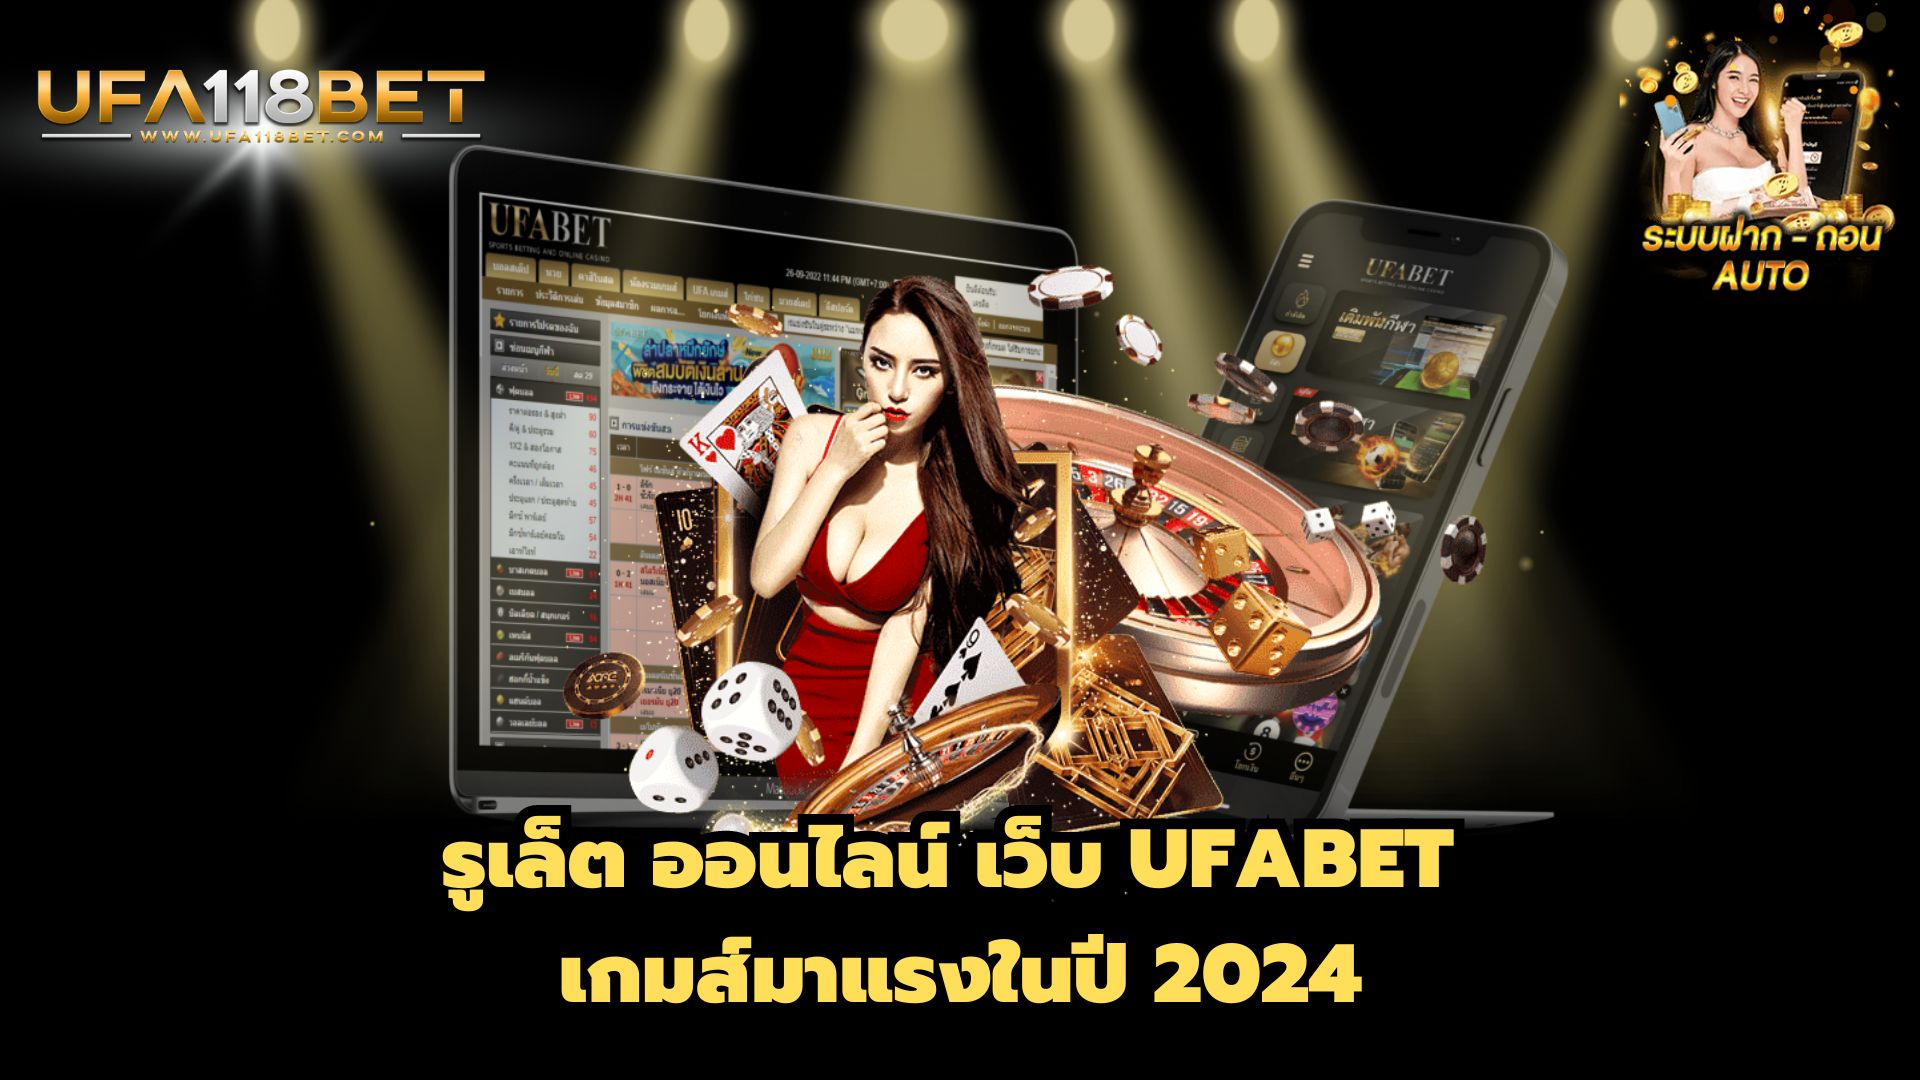 รูเล็ต ออนไลน์ เว็บ UFABET เกมส์มาแรงในปี 2024